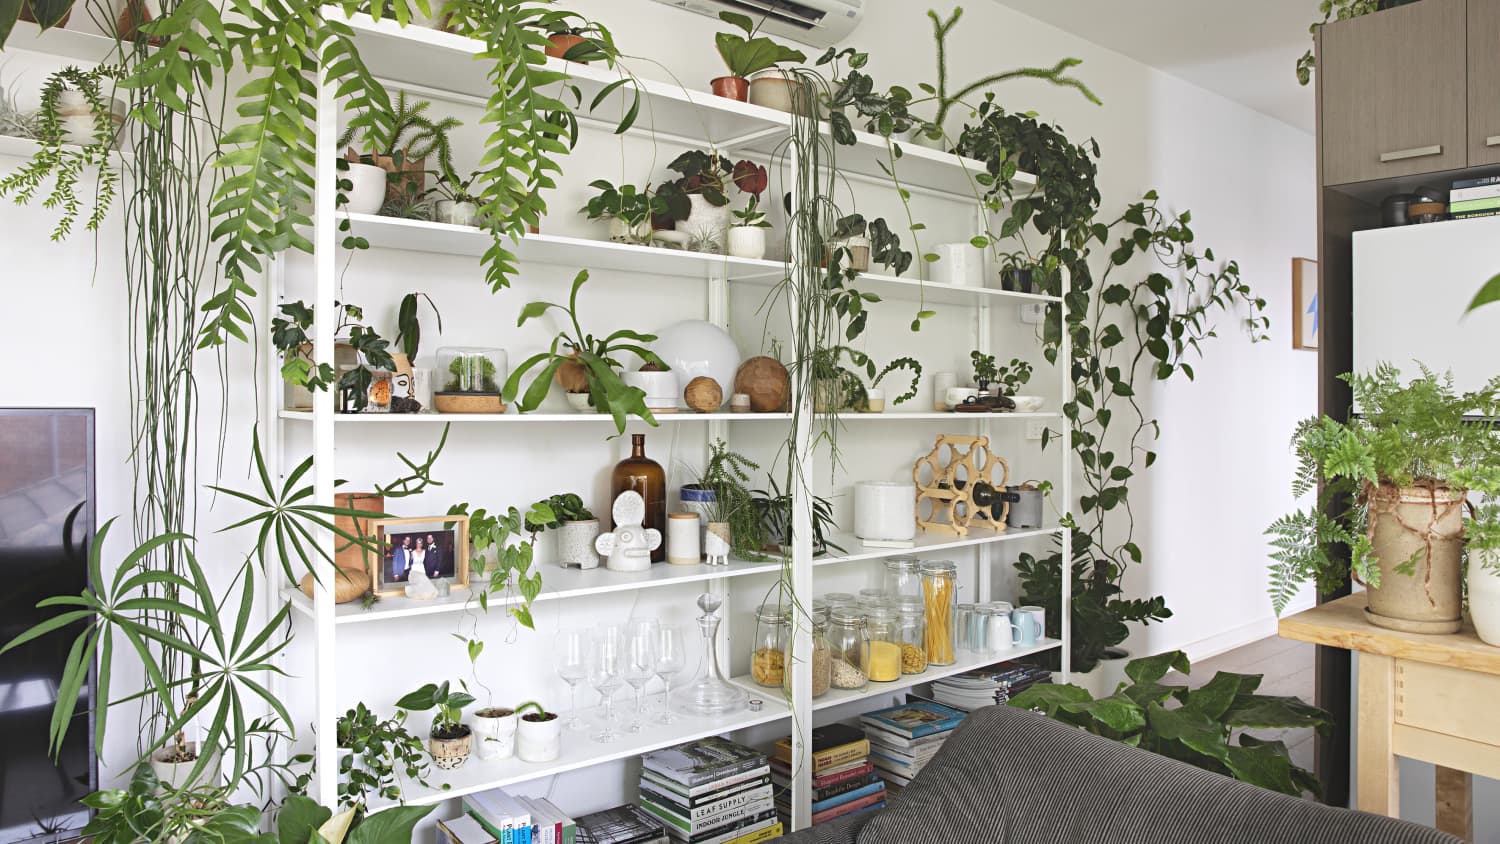 Ways to display plants indoors